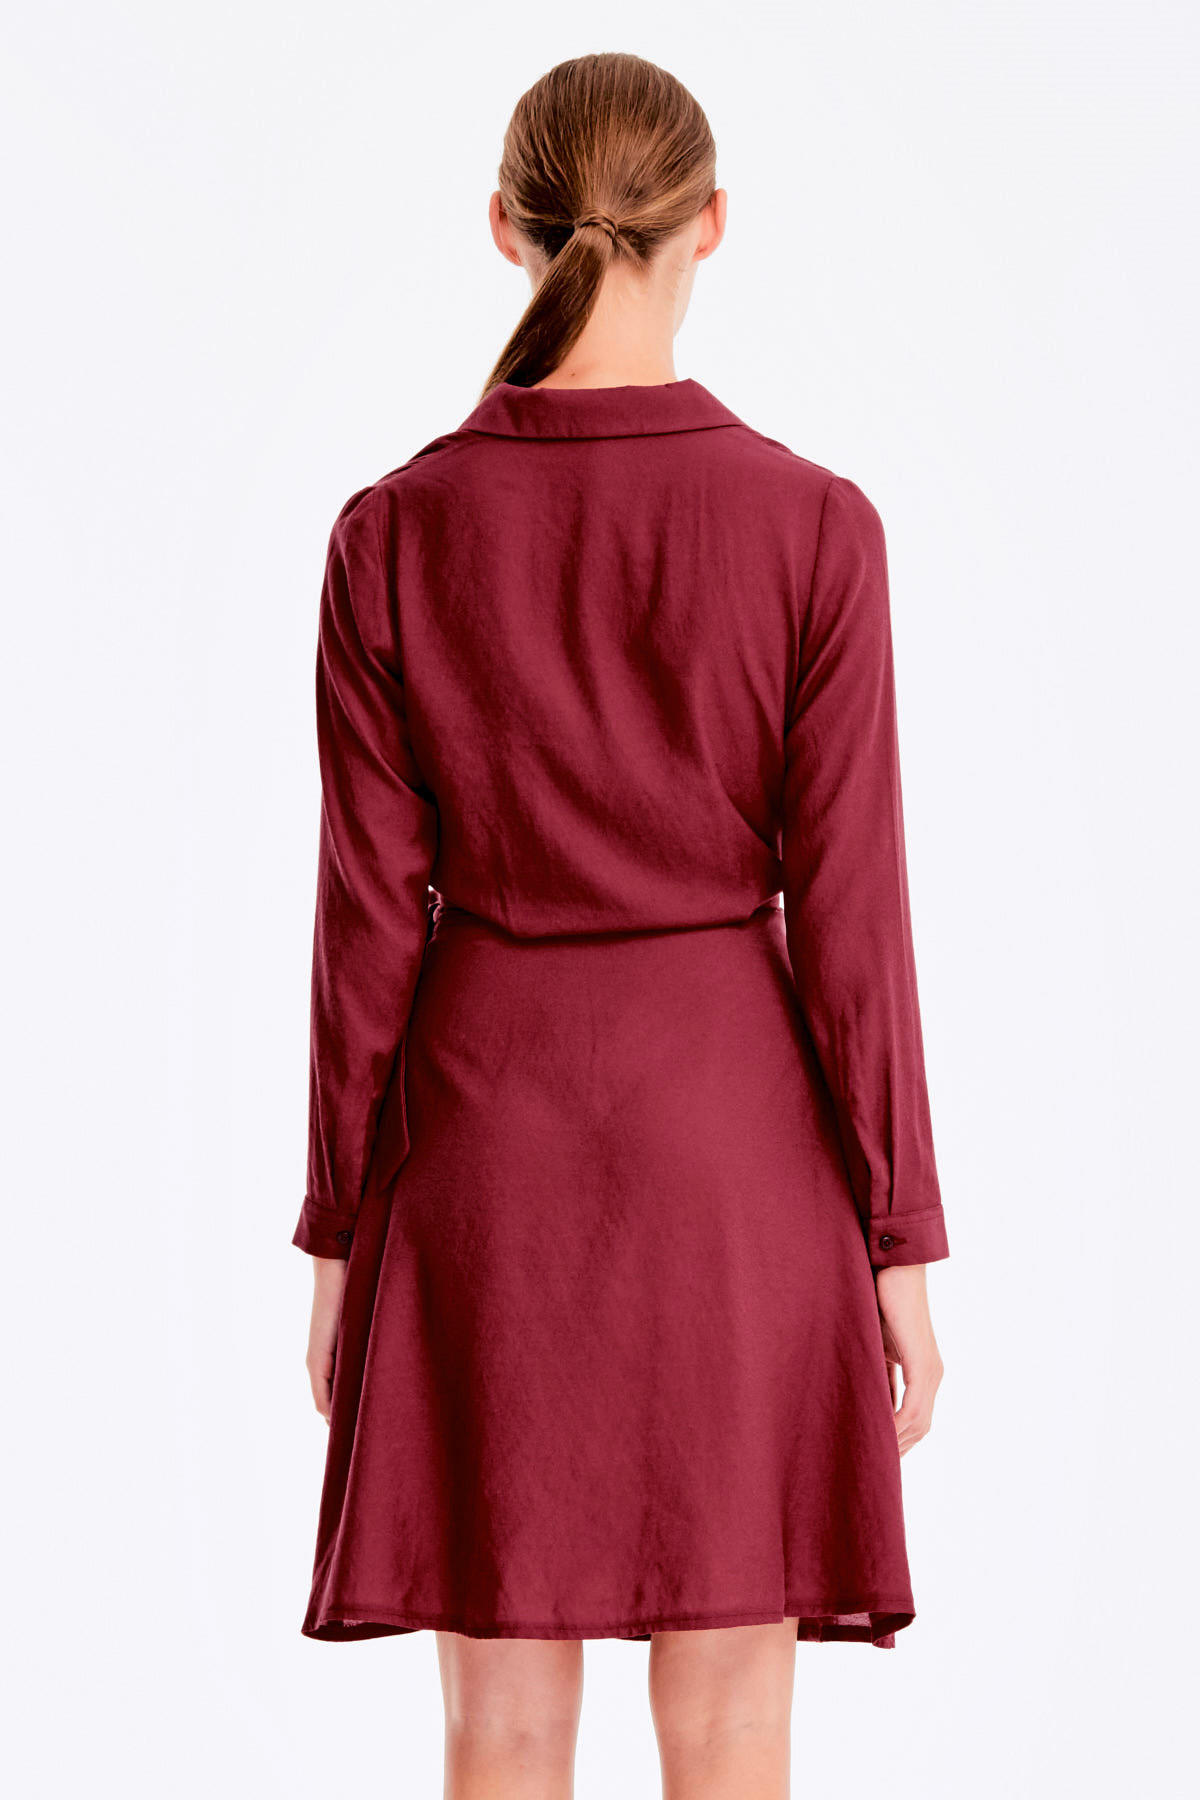 Wrap burgundy dress , photo 6